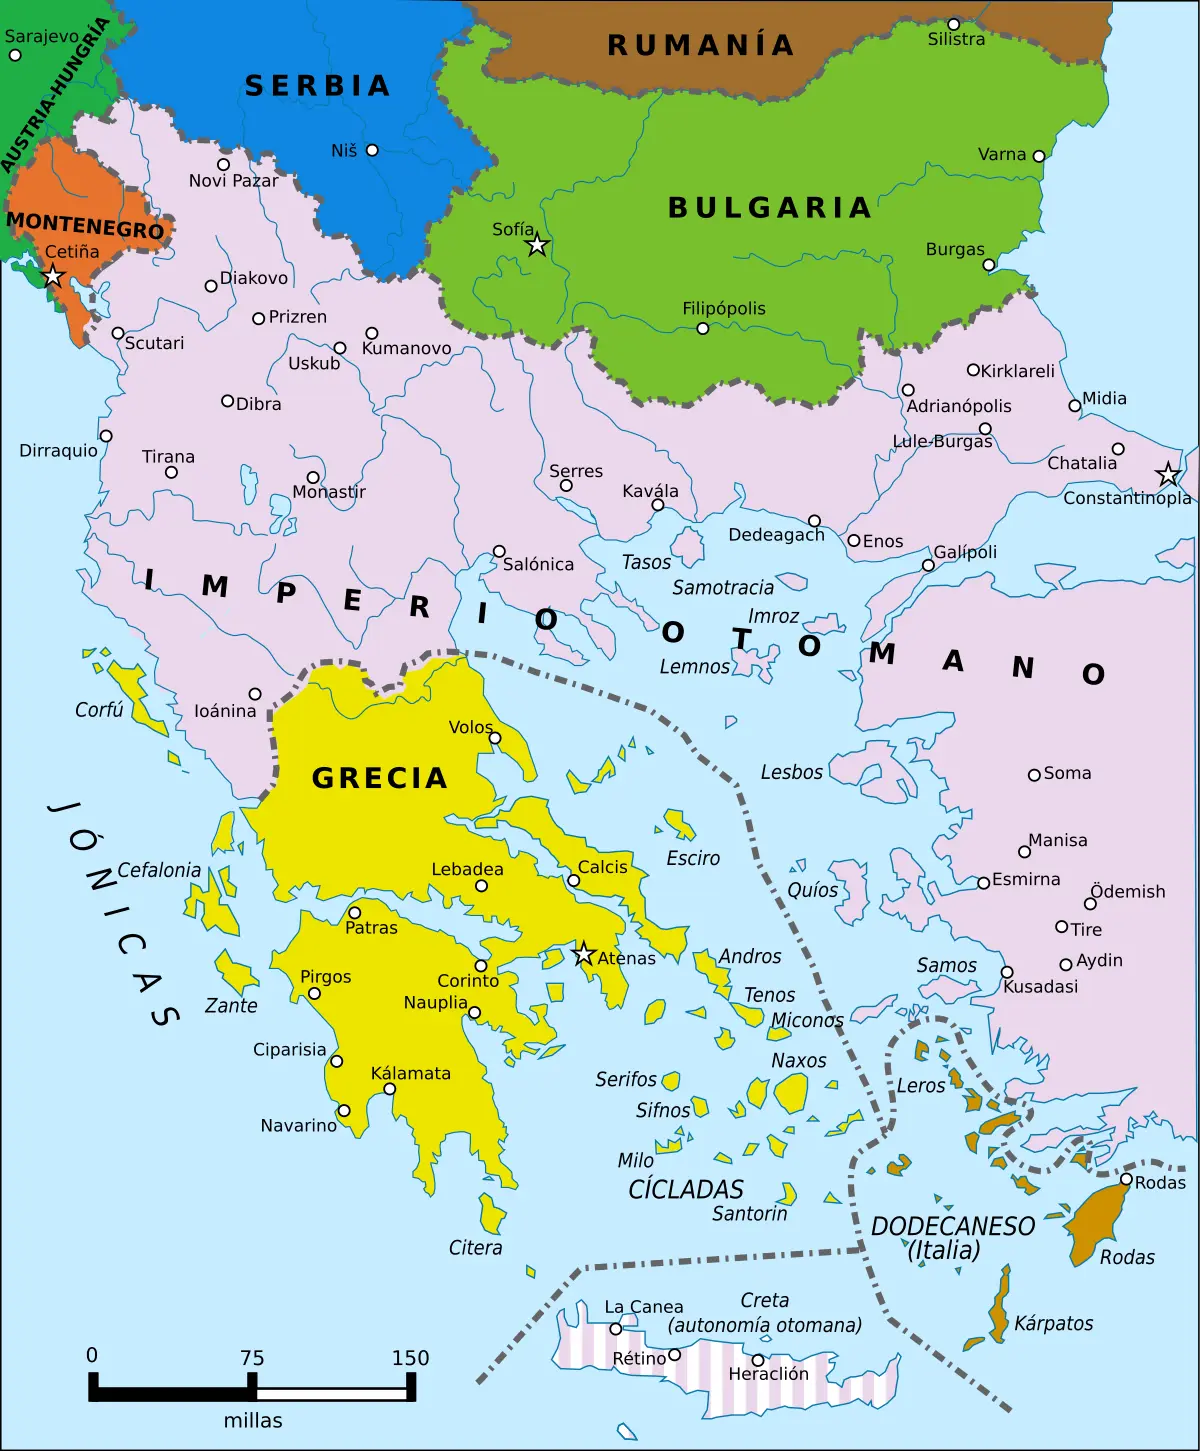 guerra de los balcanes resumen - Qué pasó en la guerra de los Balcanes